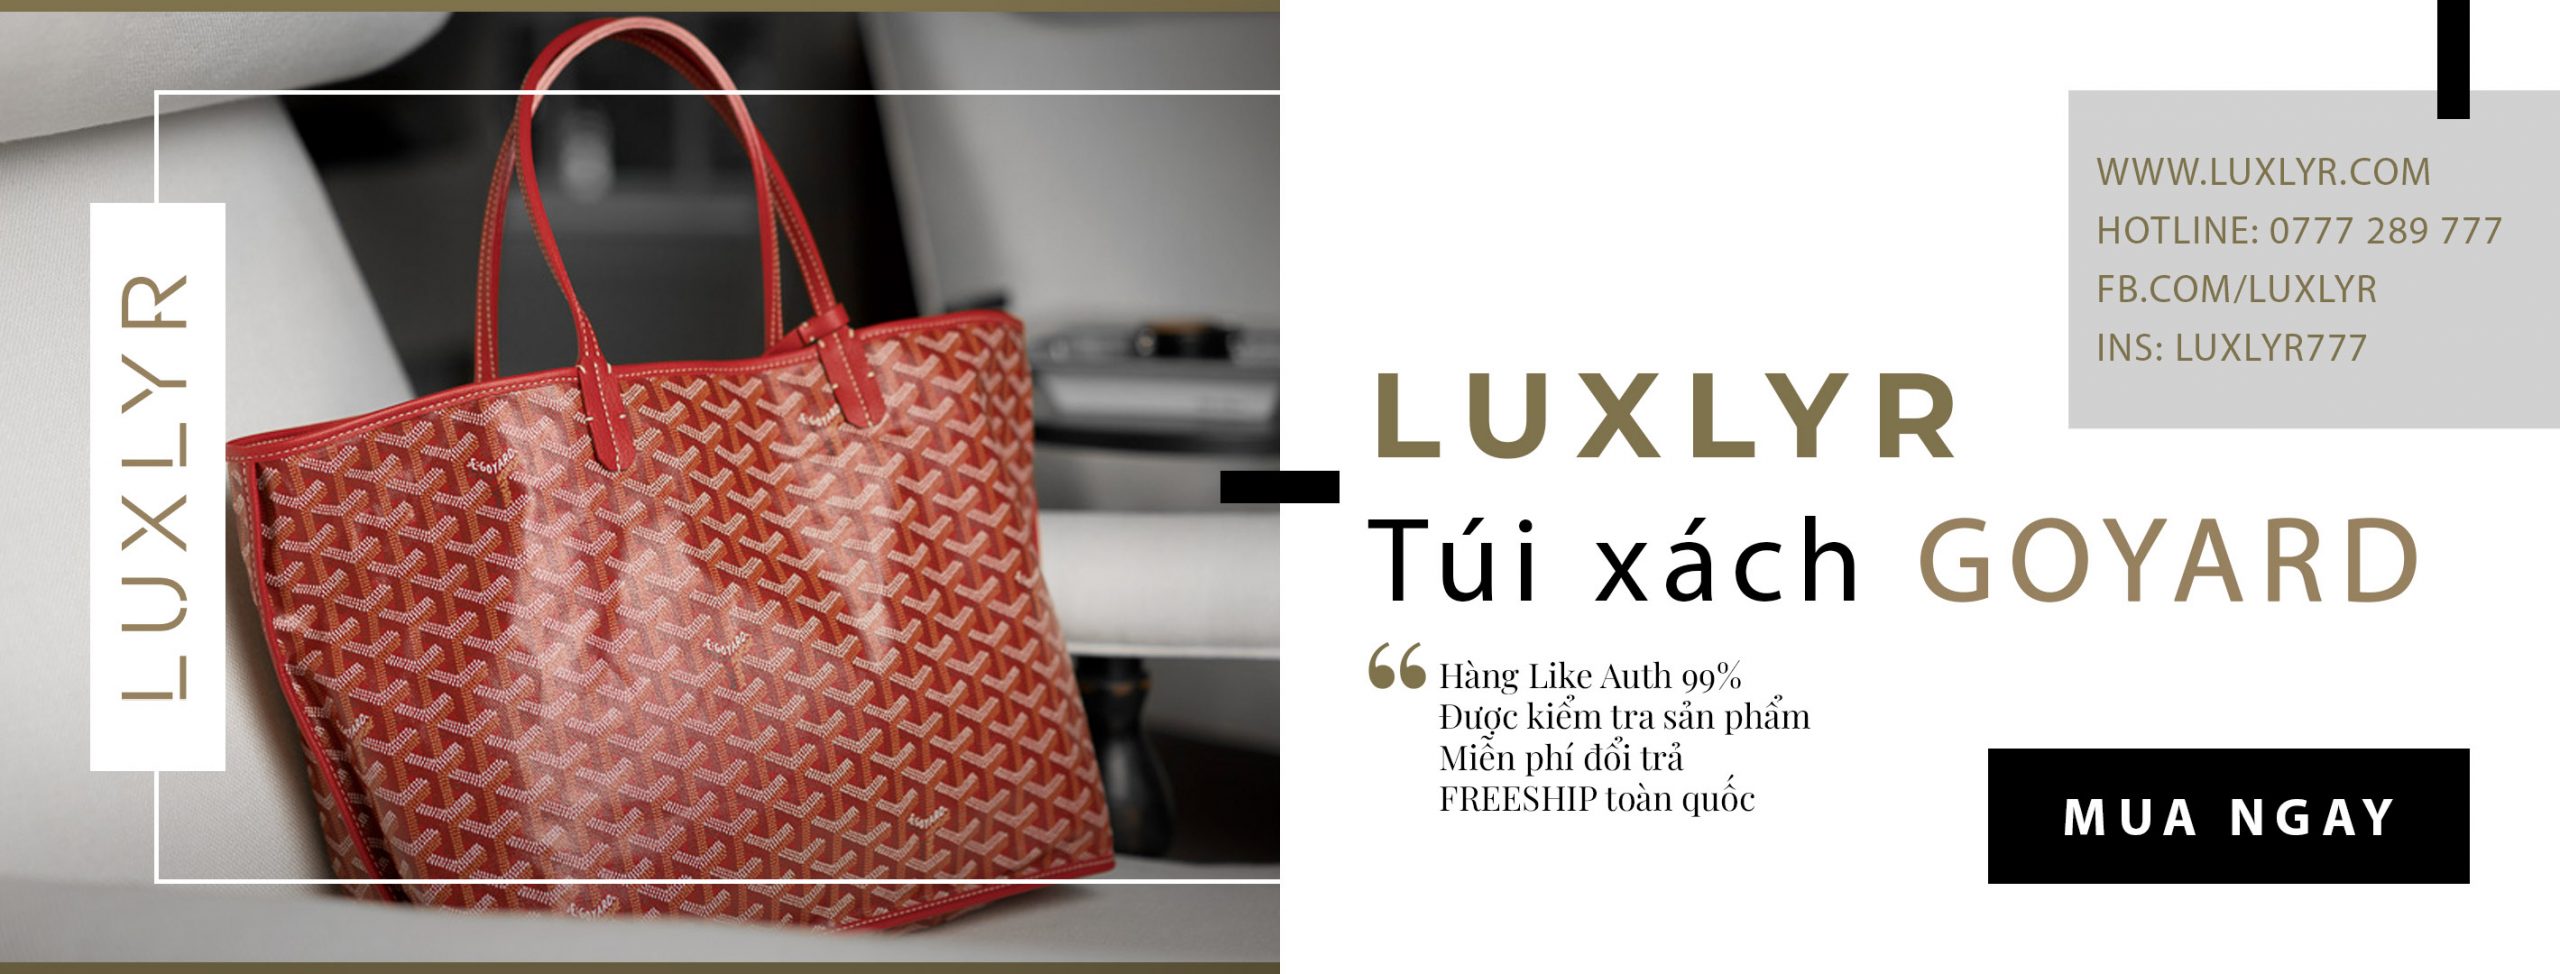 Luxlyr - Chuyên cung cấp túi xách Goyard cao cấp